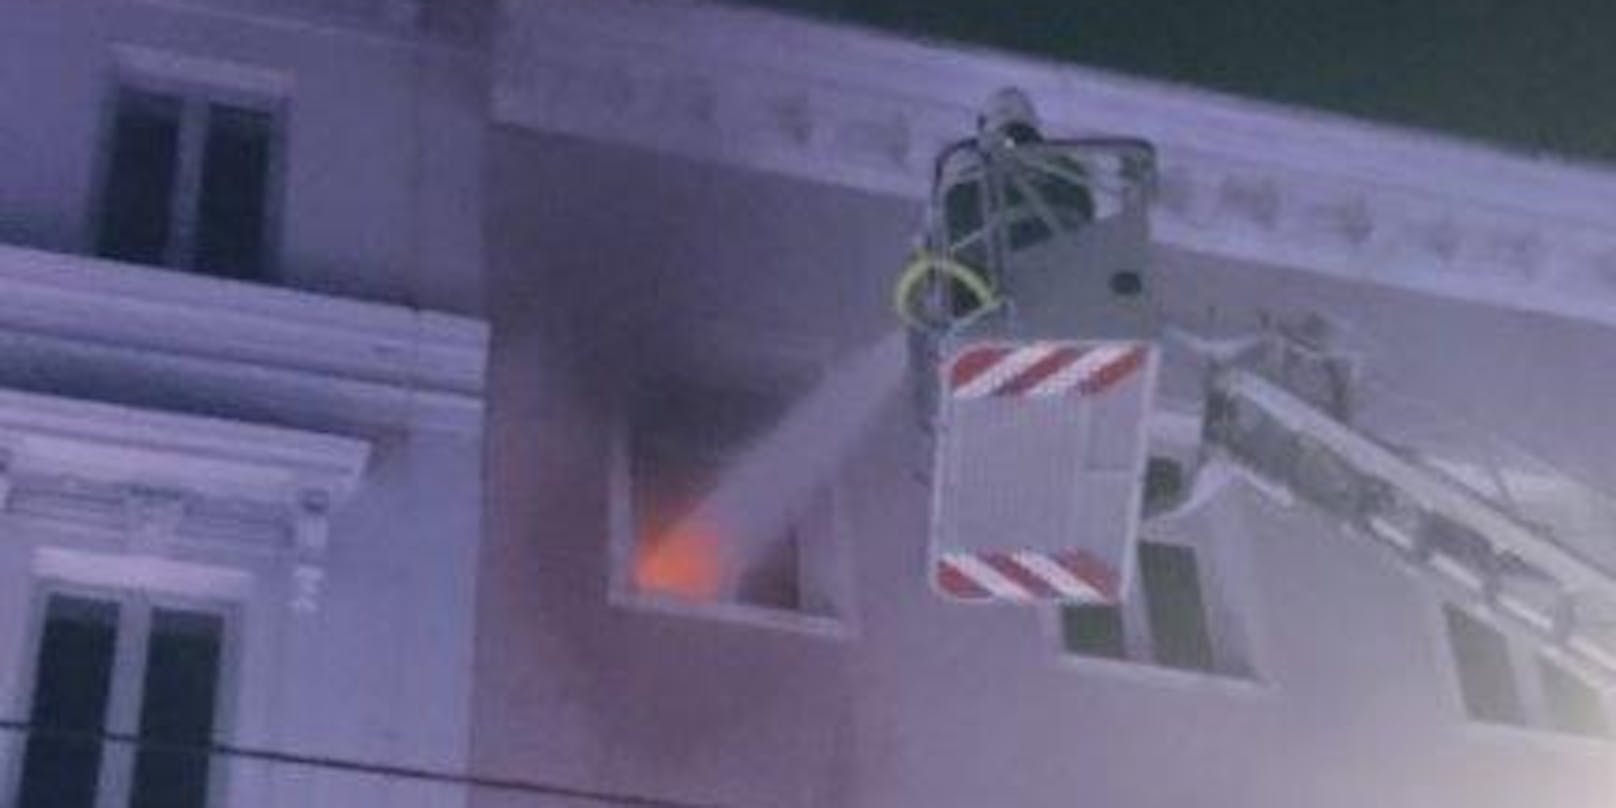 Eine Wohnung in der Lacknergasse, Wien-Hernals, ist am 7. November 2020 durch einen Brand schwer beschädigt worden